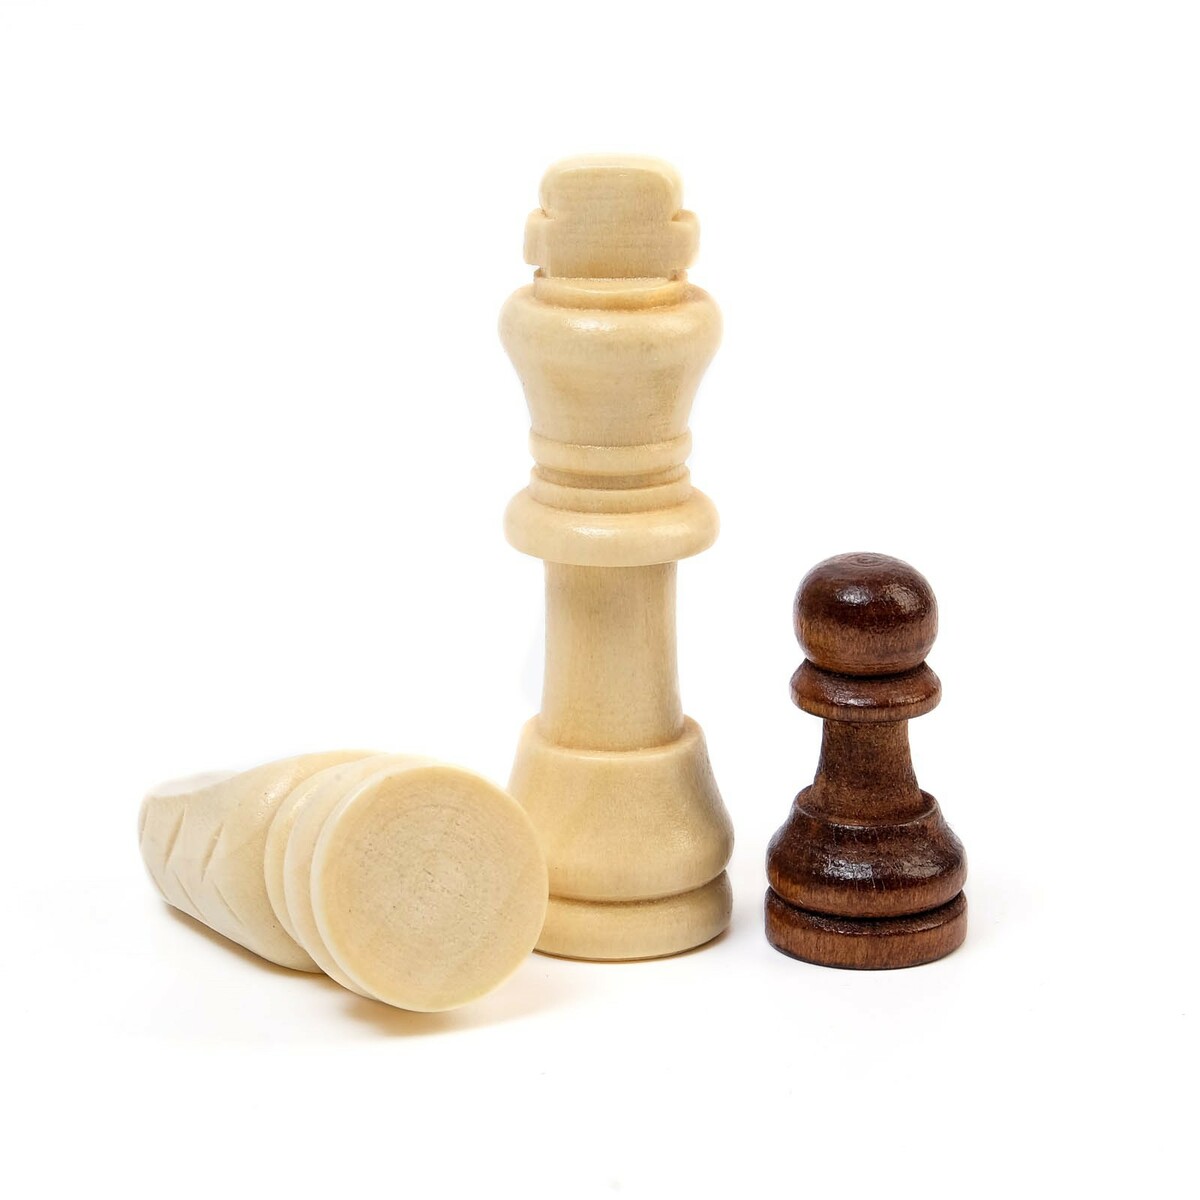 фото Шахматы деревянные обиходные 29 х 29 см, король h-5.5 см, пешка h-3 см no brand